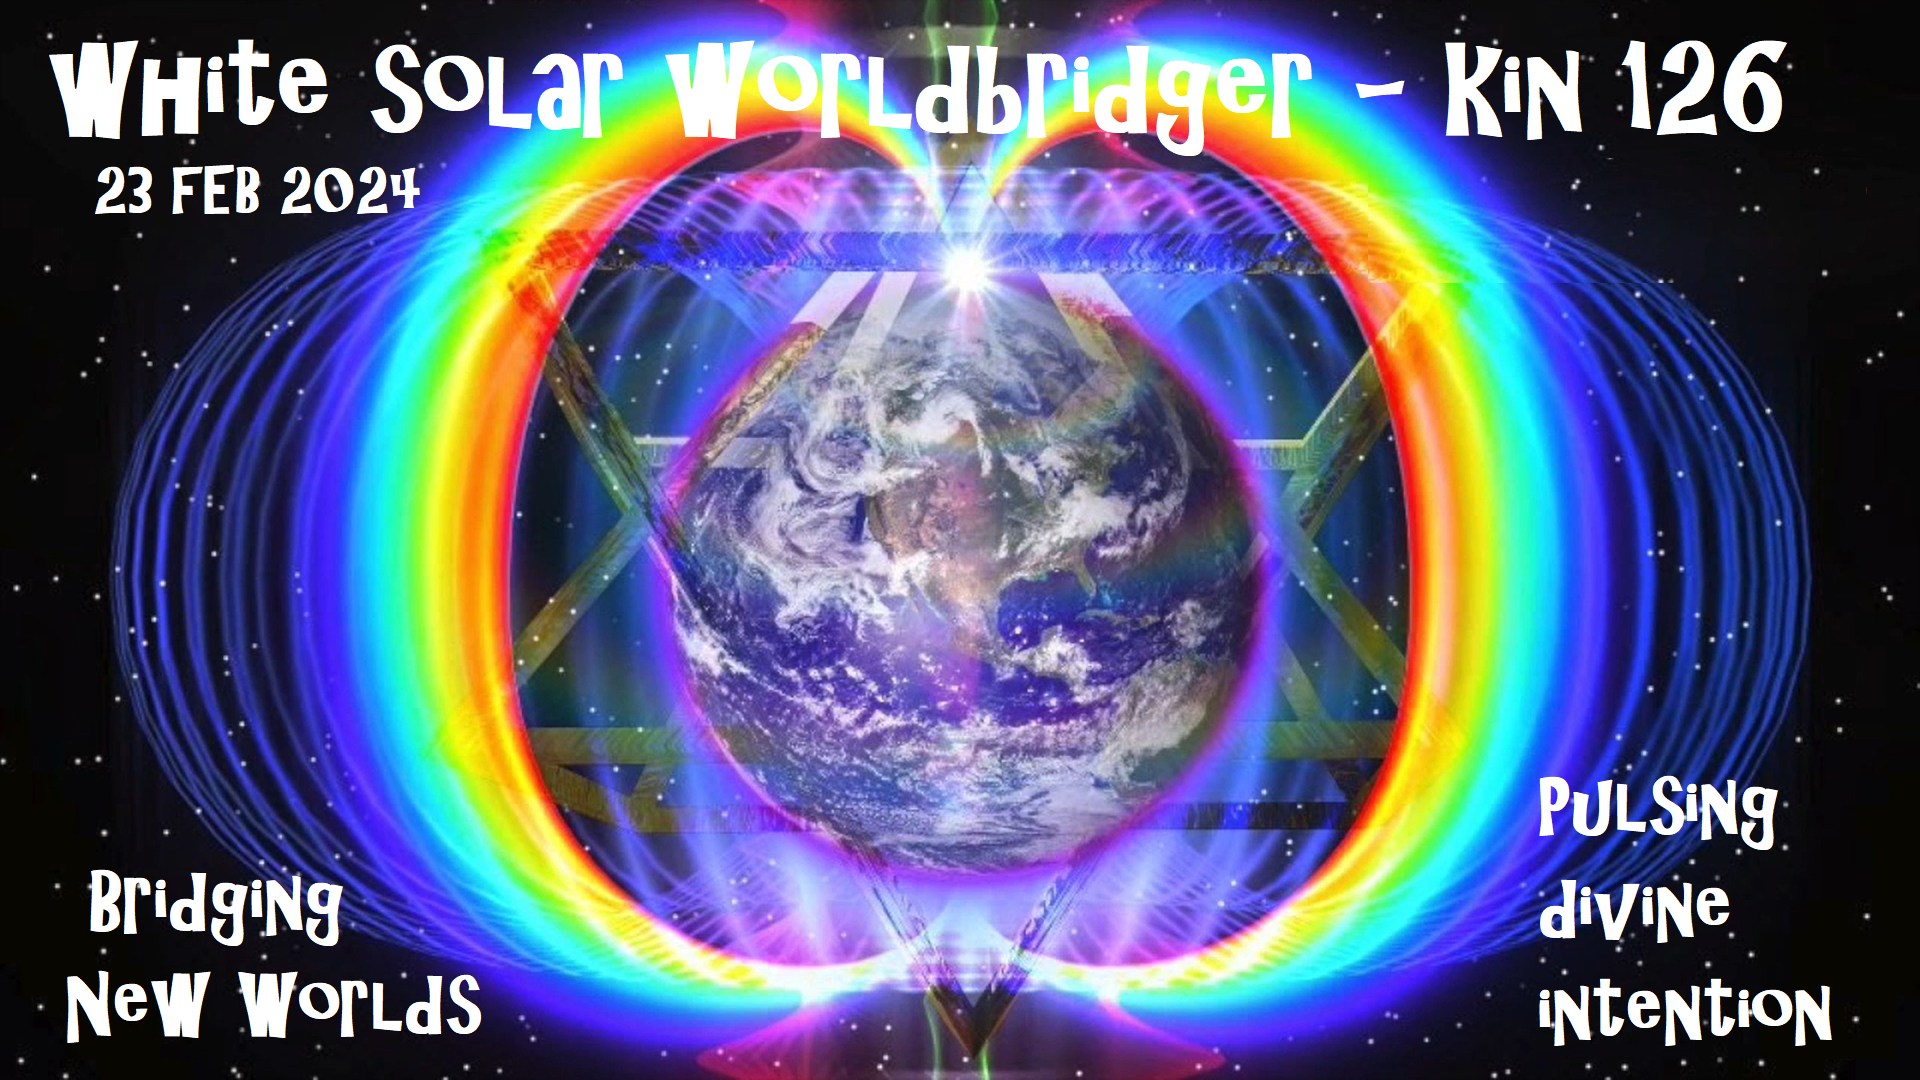 WHITE SOLAR WORLDBRIDGER